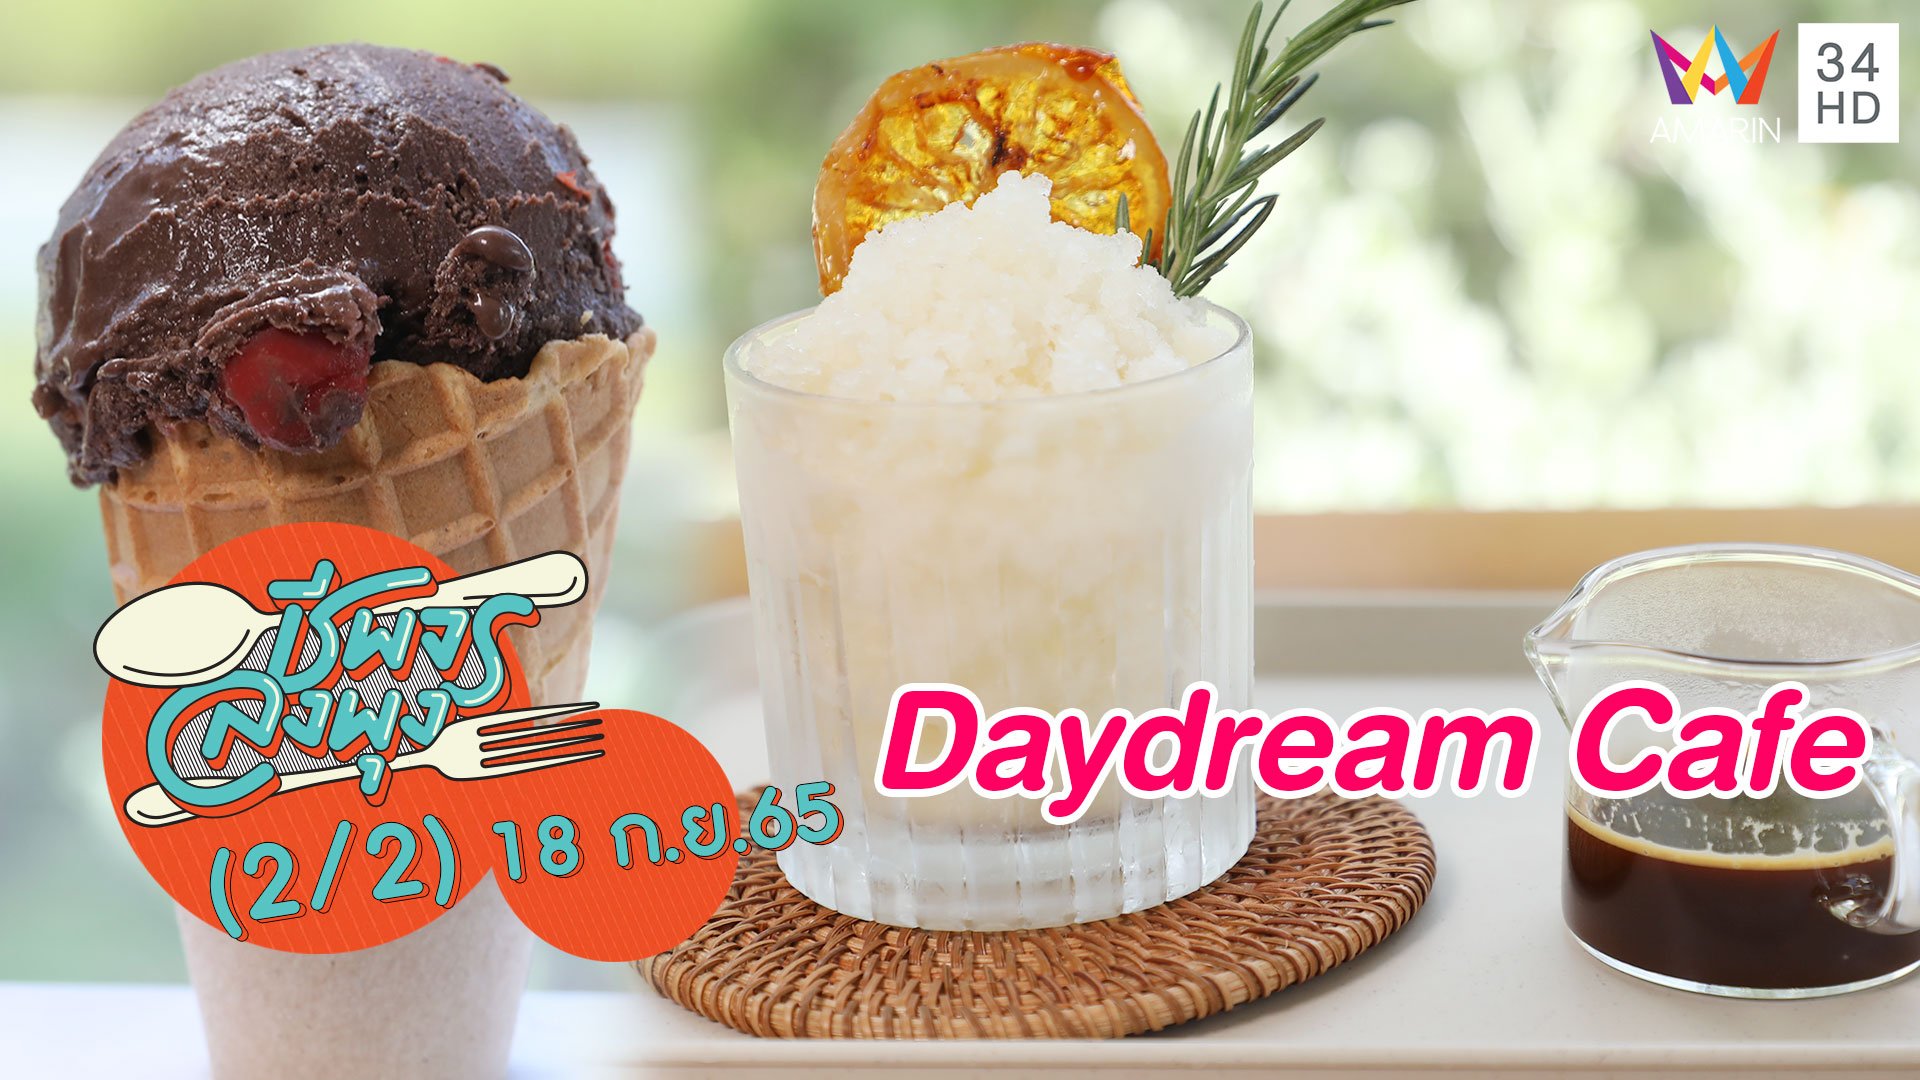 ลิ้มรสไอศกรีมโฮมเมดเนื้อเนียน @ร้าน Daydream Cafe | ชีพจรลงพุง | 18 ก.ย. 65 (2/2) | AMARIN TVHD34